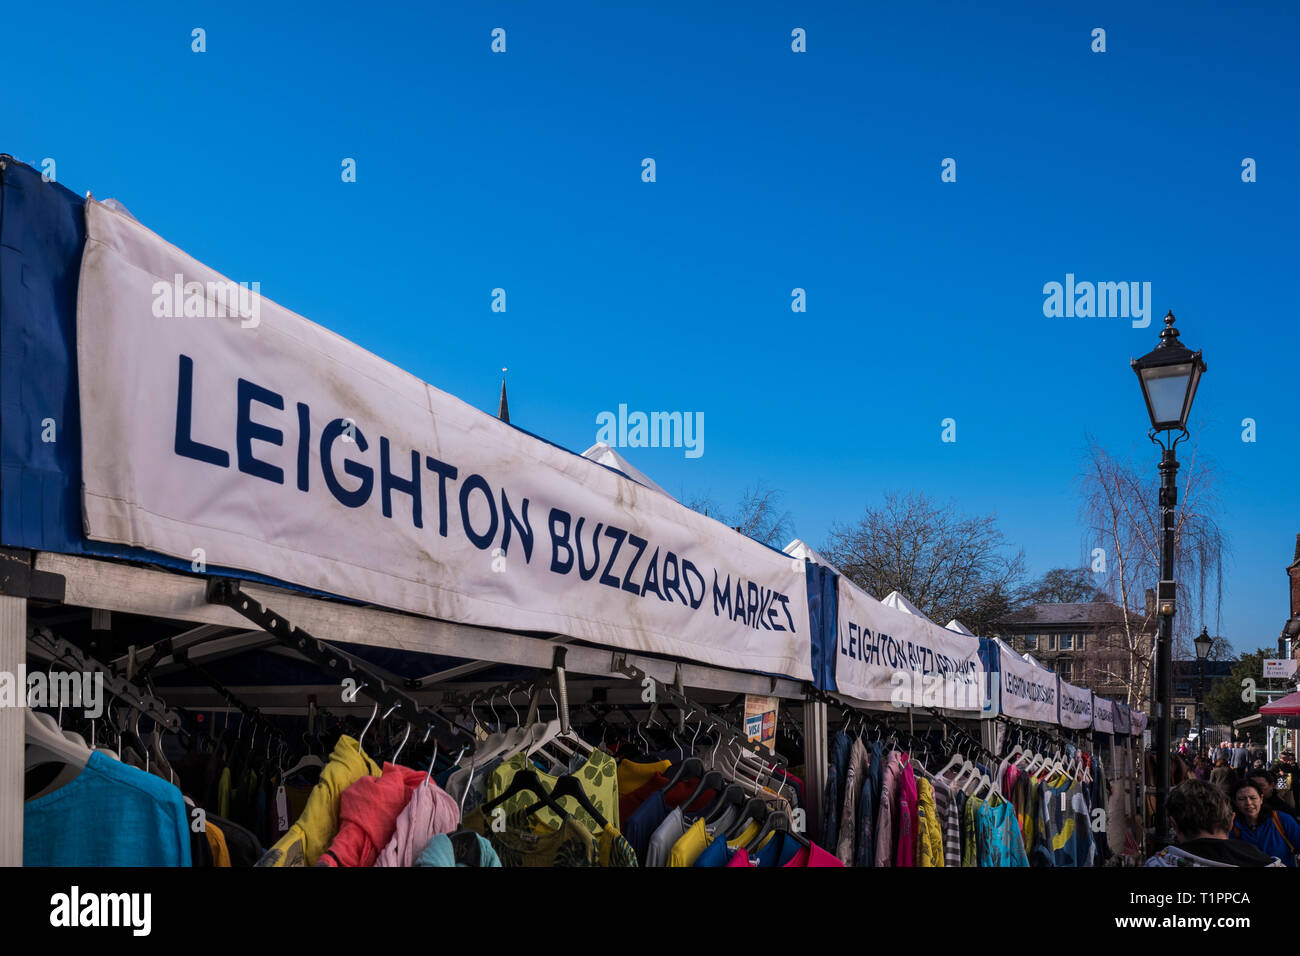 Leighton Buzzard, Historic market town, Bedfordshire, England, U.K. Stock Photo